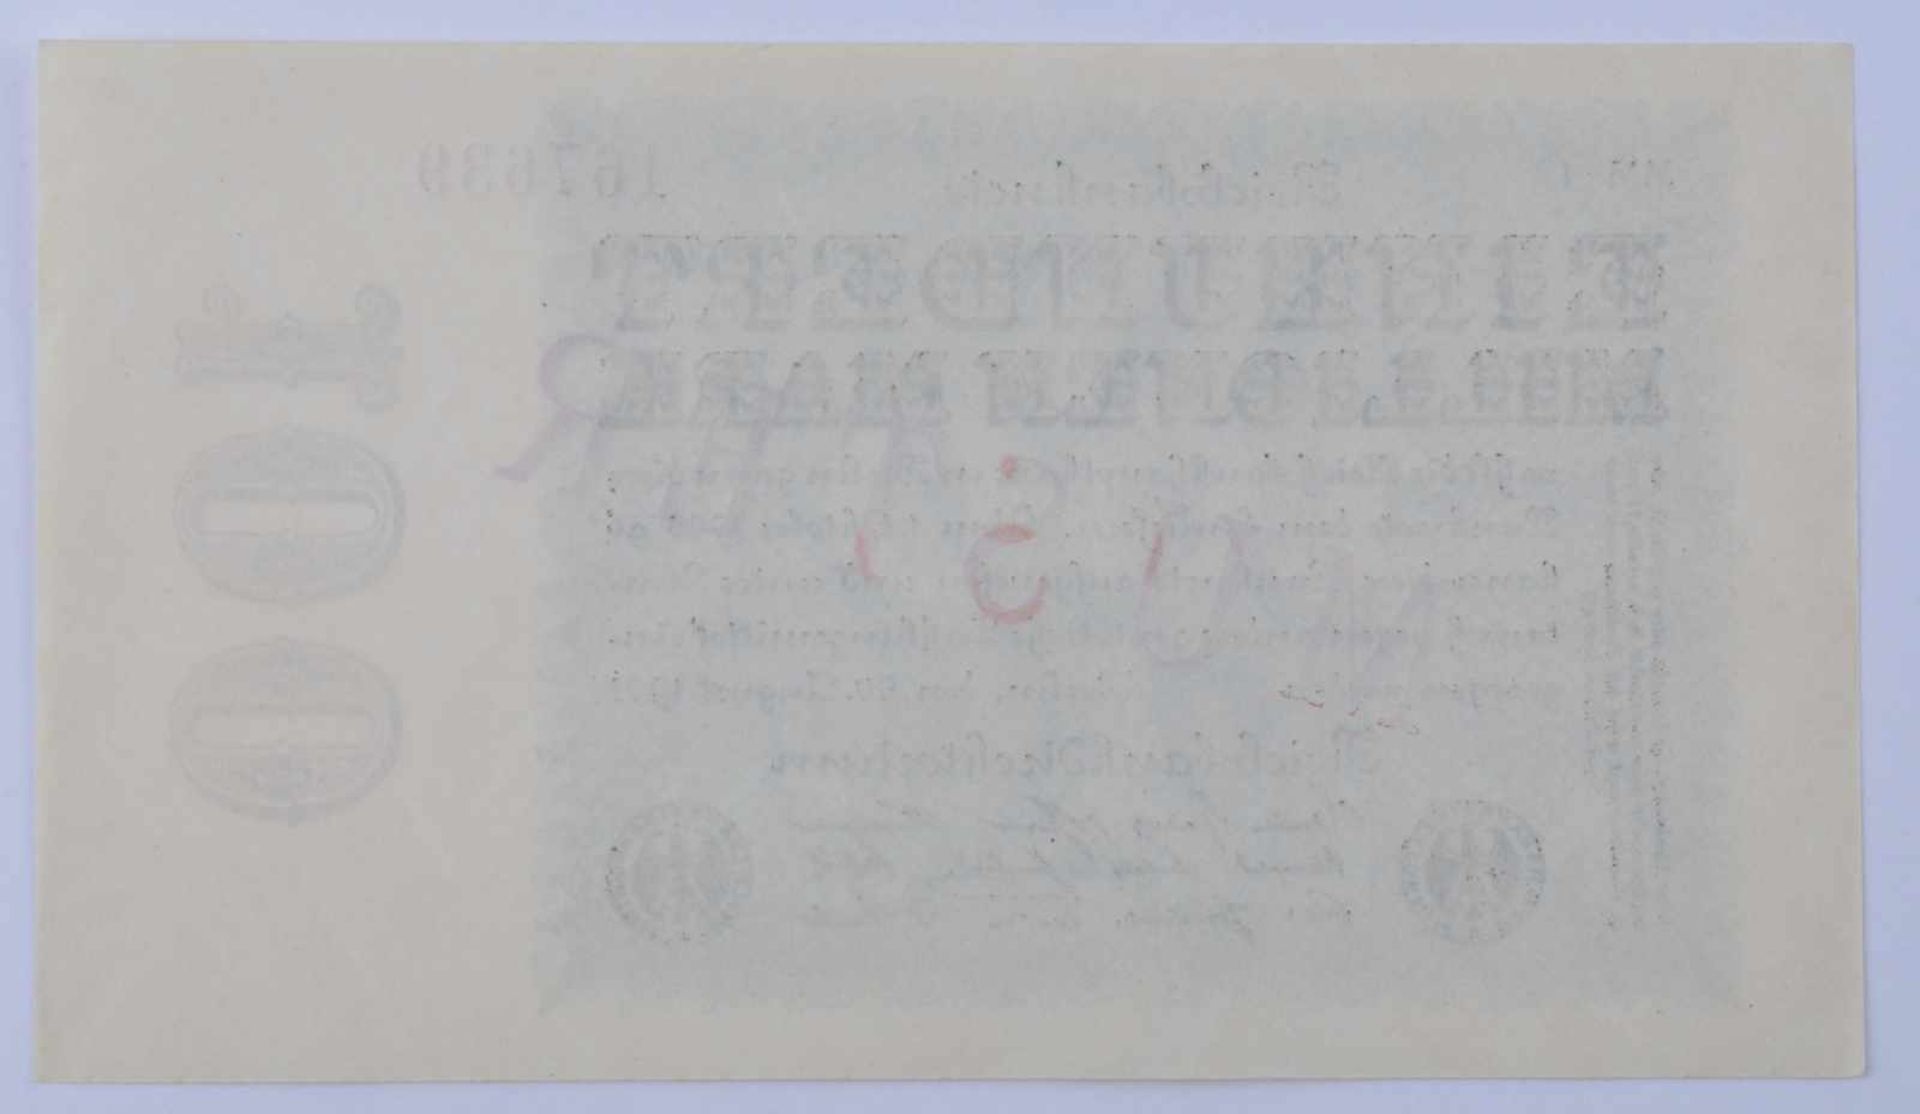 Deutschland, 100 Mio Mark 22.08.1923Reichsbanknote, mit diagonalem roten Aufdruck-Muster auf - Bild 2 aus 2